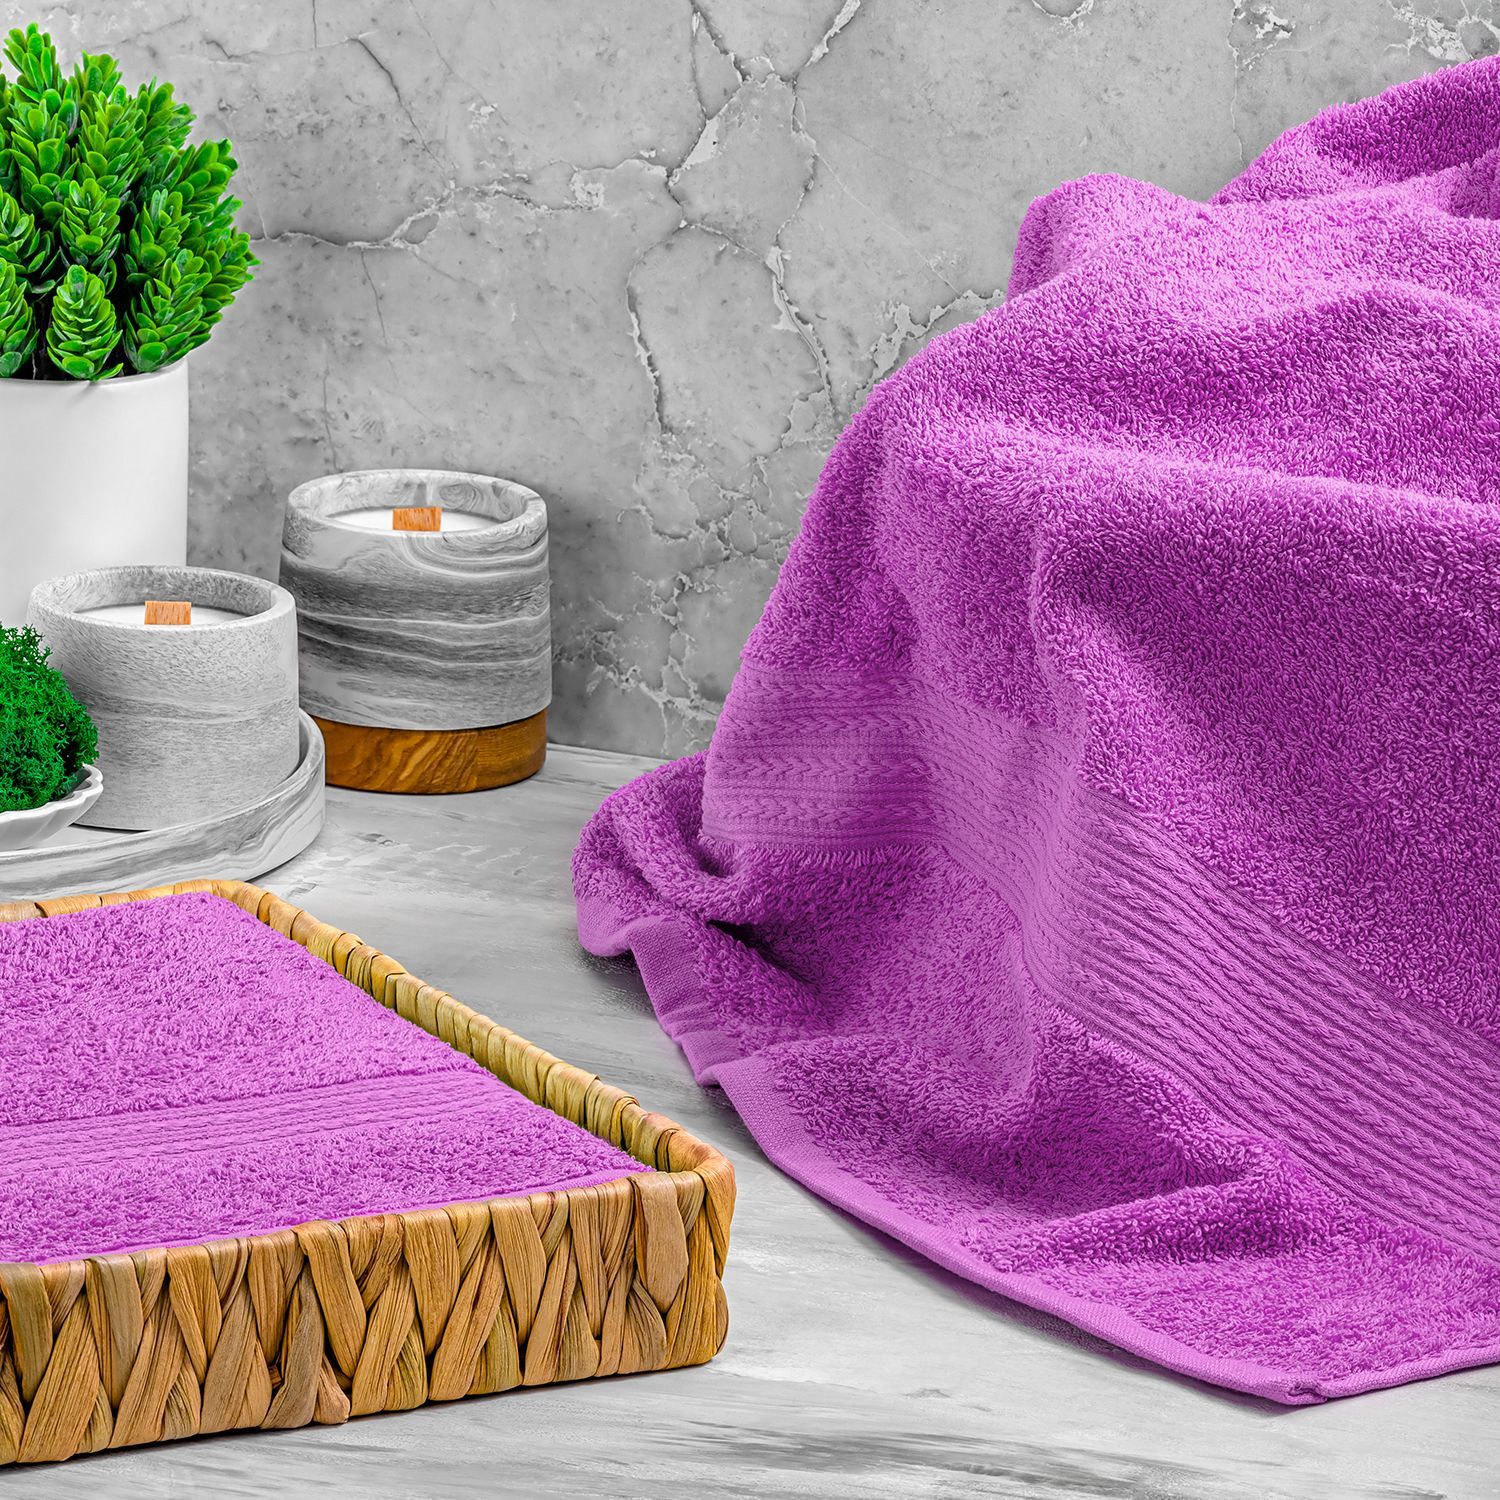 Фиолетовое полотенце. Полотенце с сиренью. Фиолетовые полотенца в ванной. Светло фиолетовые полотенца.